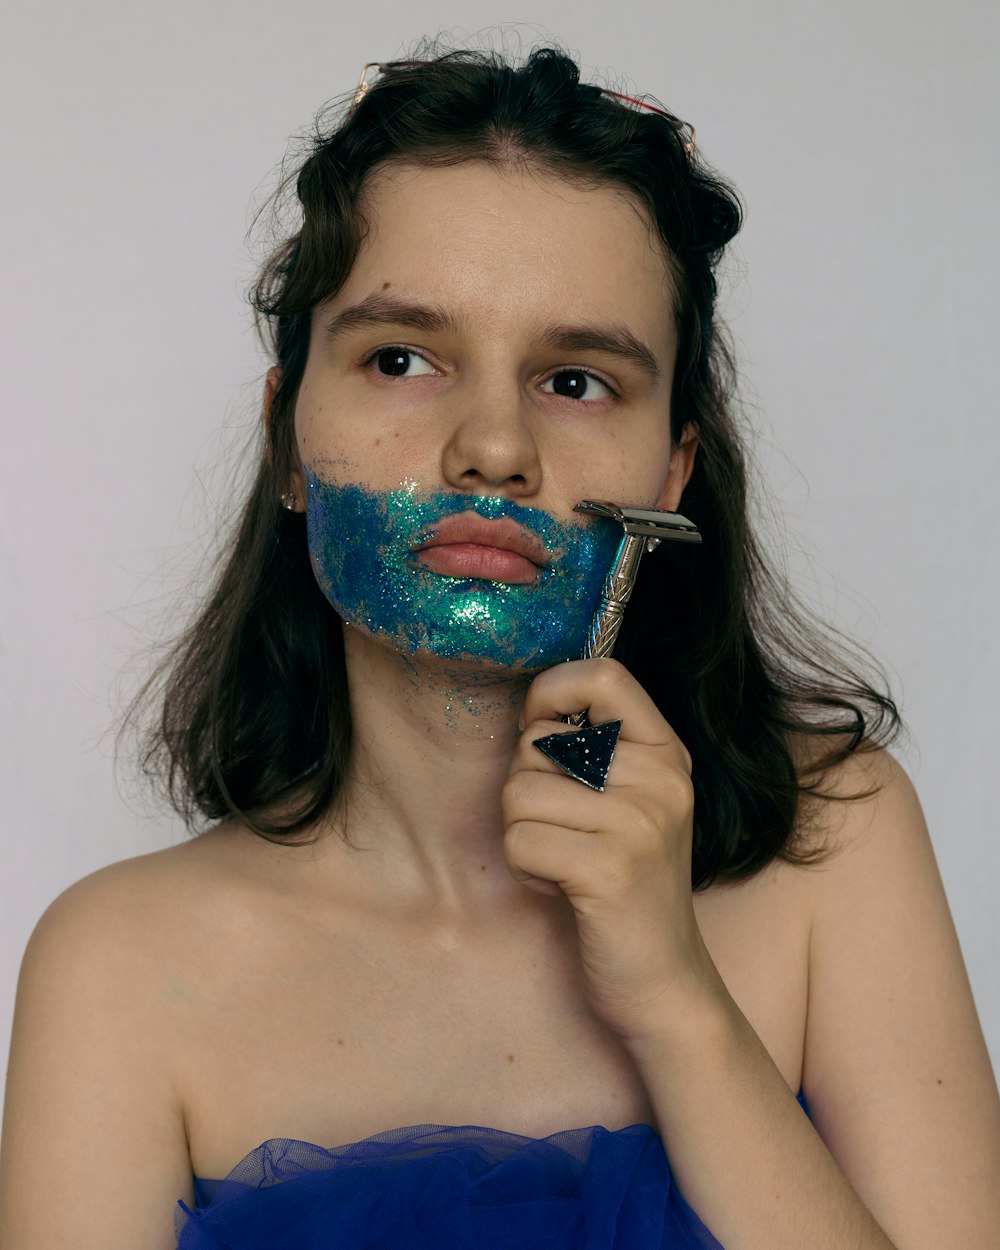 mulher com tinta azul e verde em seu rosto